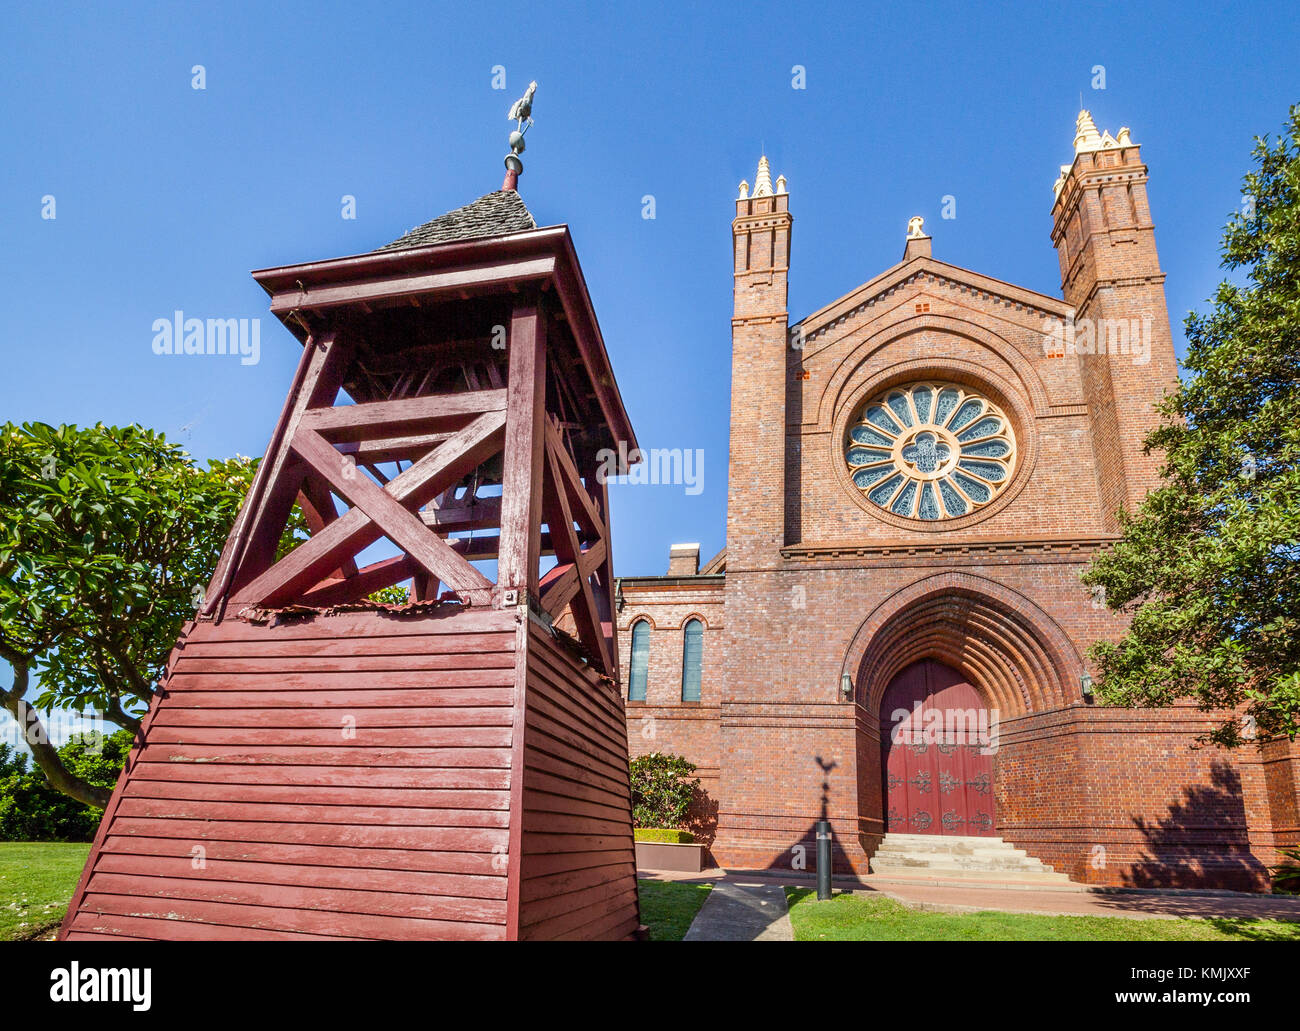 L'Australie, Nouvelle Galles du Sud, de Newcastle, de style néo-gothique de la cathédrale Christ Church (ou Cathédrale de l'Église du Christ Roi) Banque D'Images